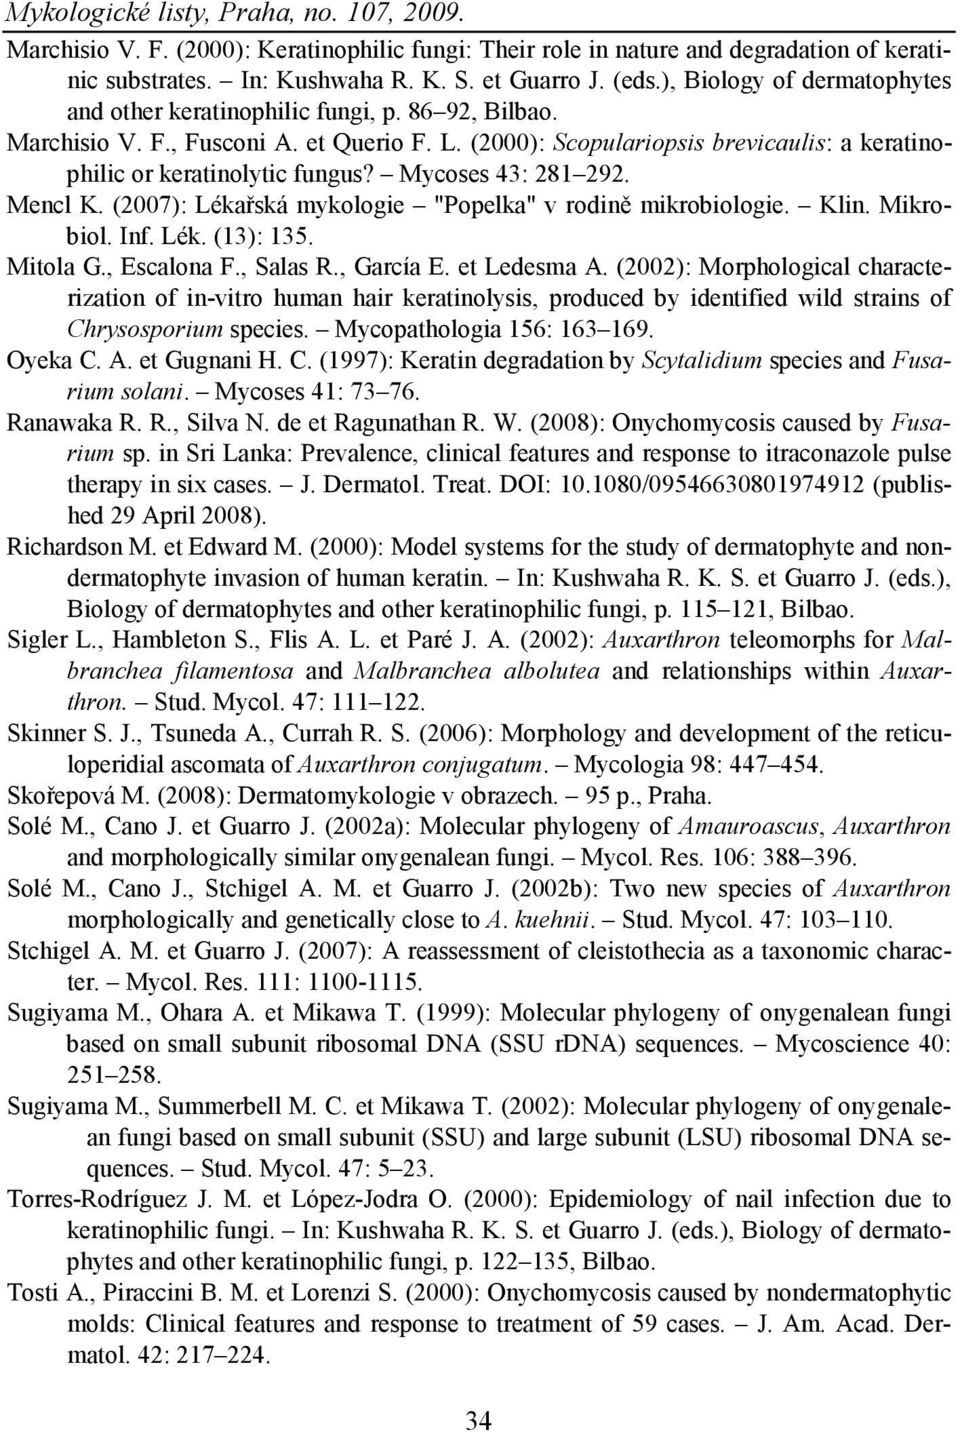 Mycoses 43: 281 292. Mencl K. (2007): Lékařská mykologie "Popelka" v rodině mikrobiologie. Klin. Mikrobiol. Inf. Lék. (13): 135. Mitola G., Escalona F., Salas R., García E. et Ledesma A.